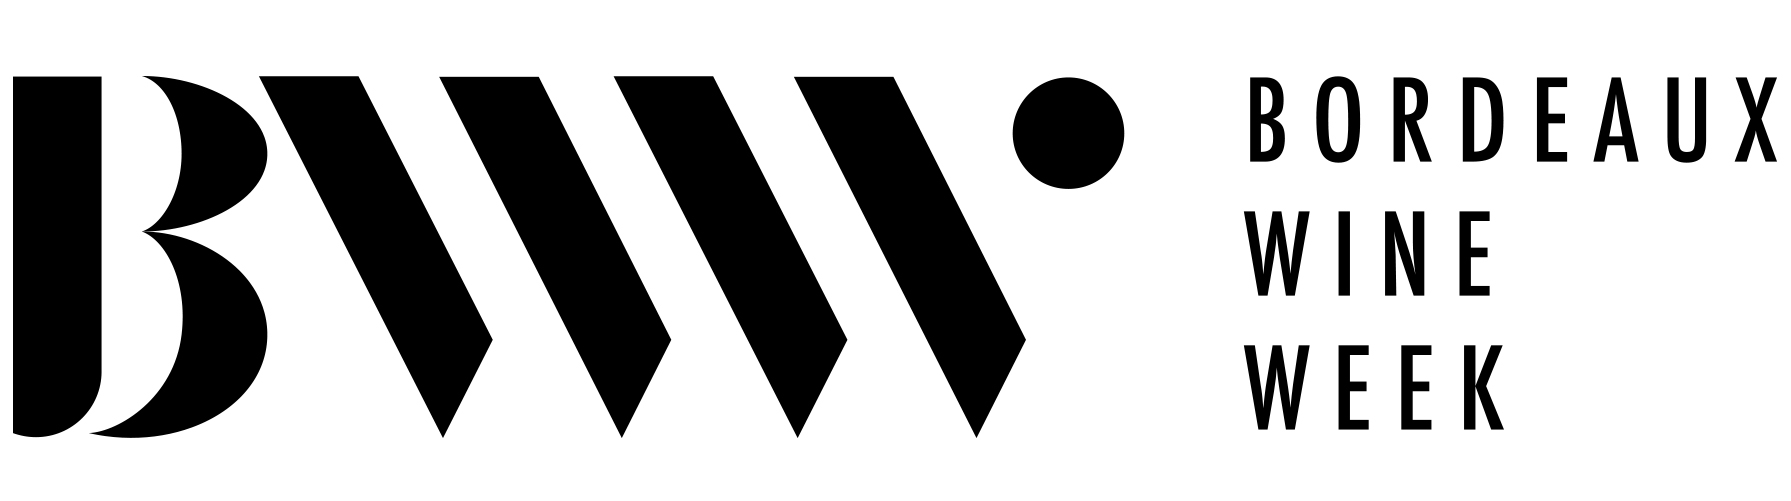 logo_BWW_texte_NOIR.jpg